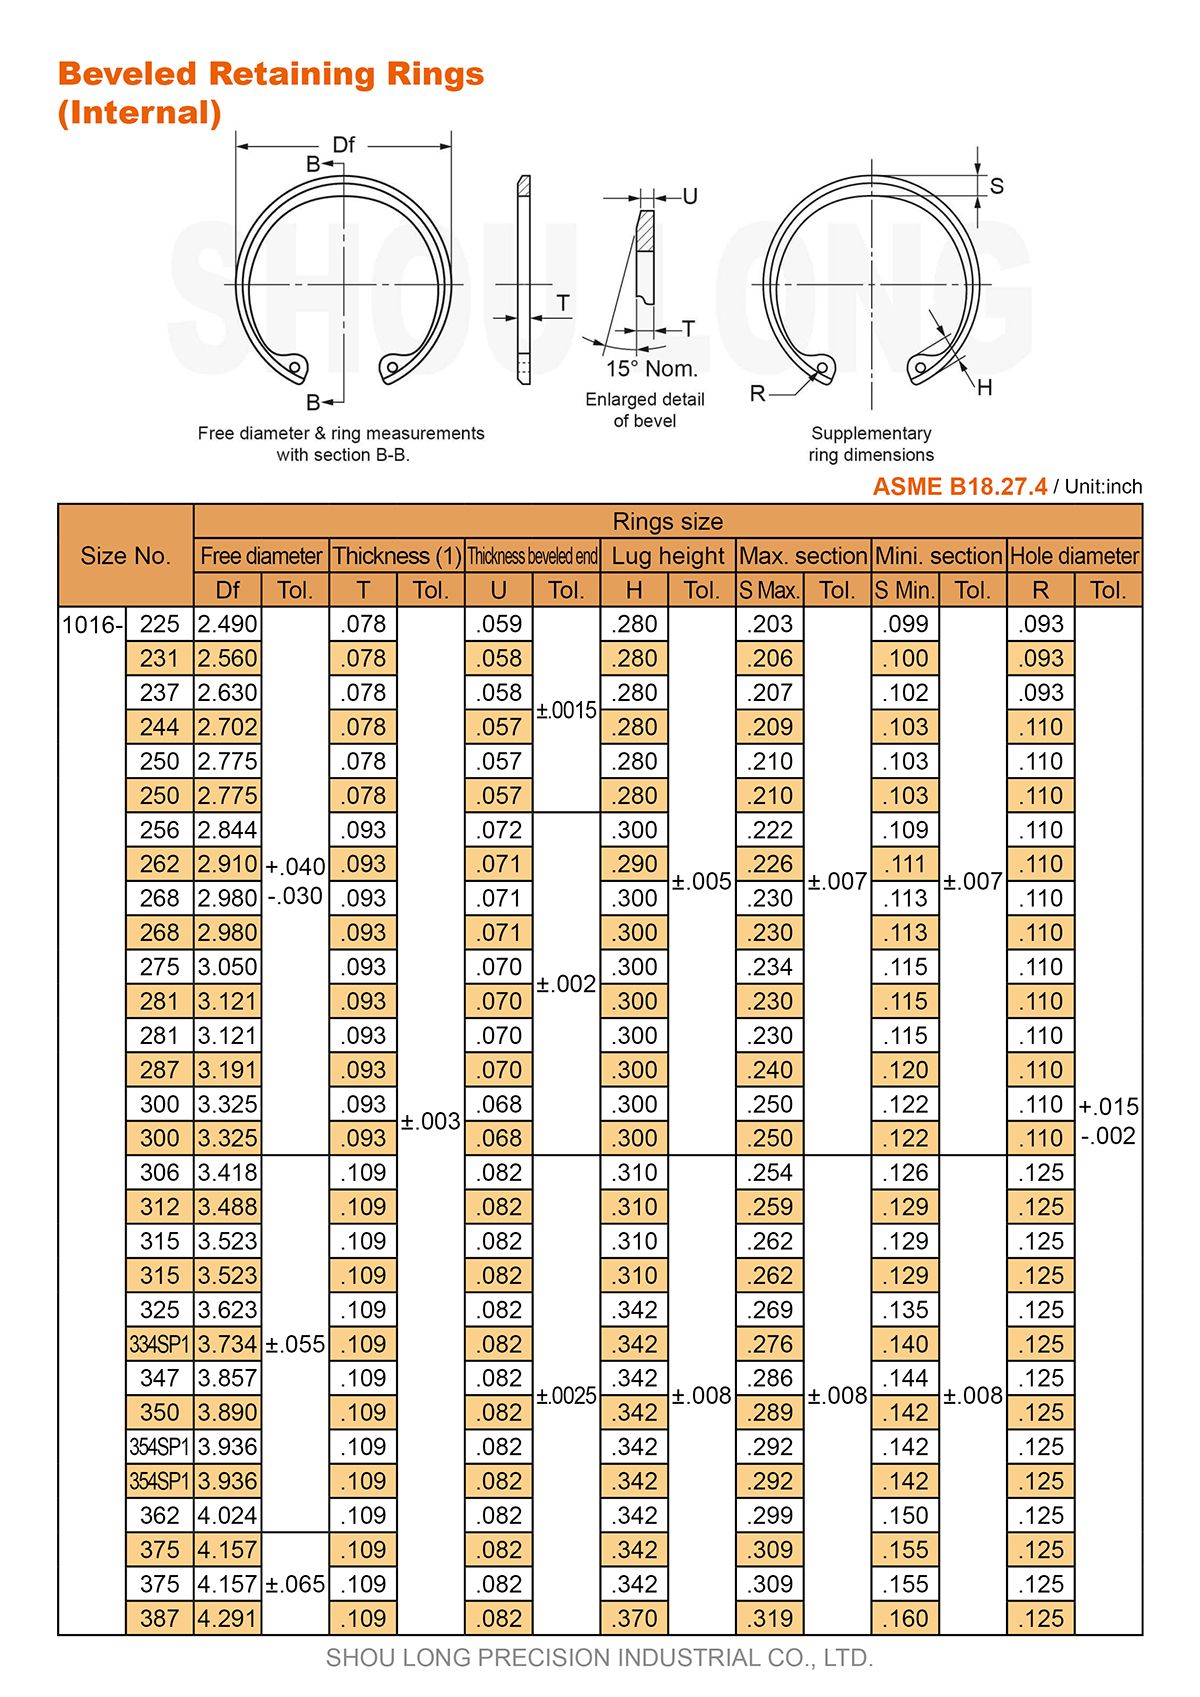 Especificação de Anéis de Retenção Biselados em Polegadas para Furos ASME/ANSI B18.27.4-2